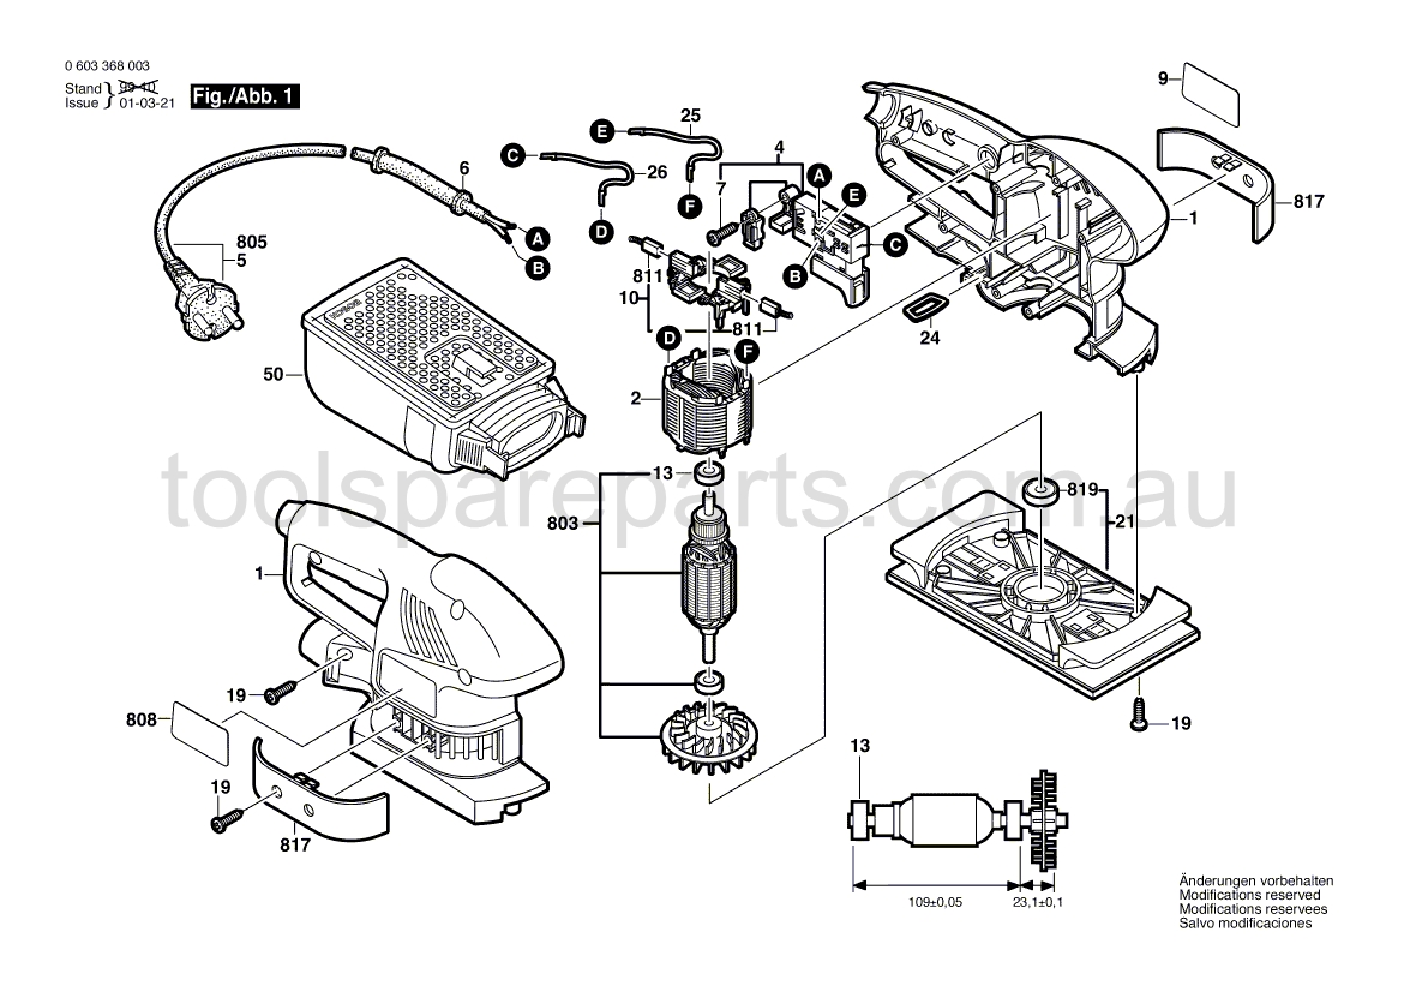 Bosch PSS 240 A 0603368037  Diagram 1